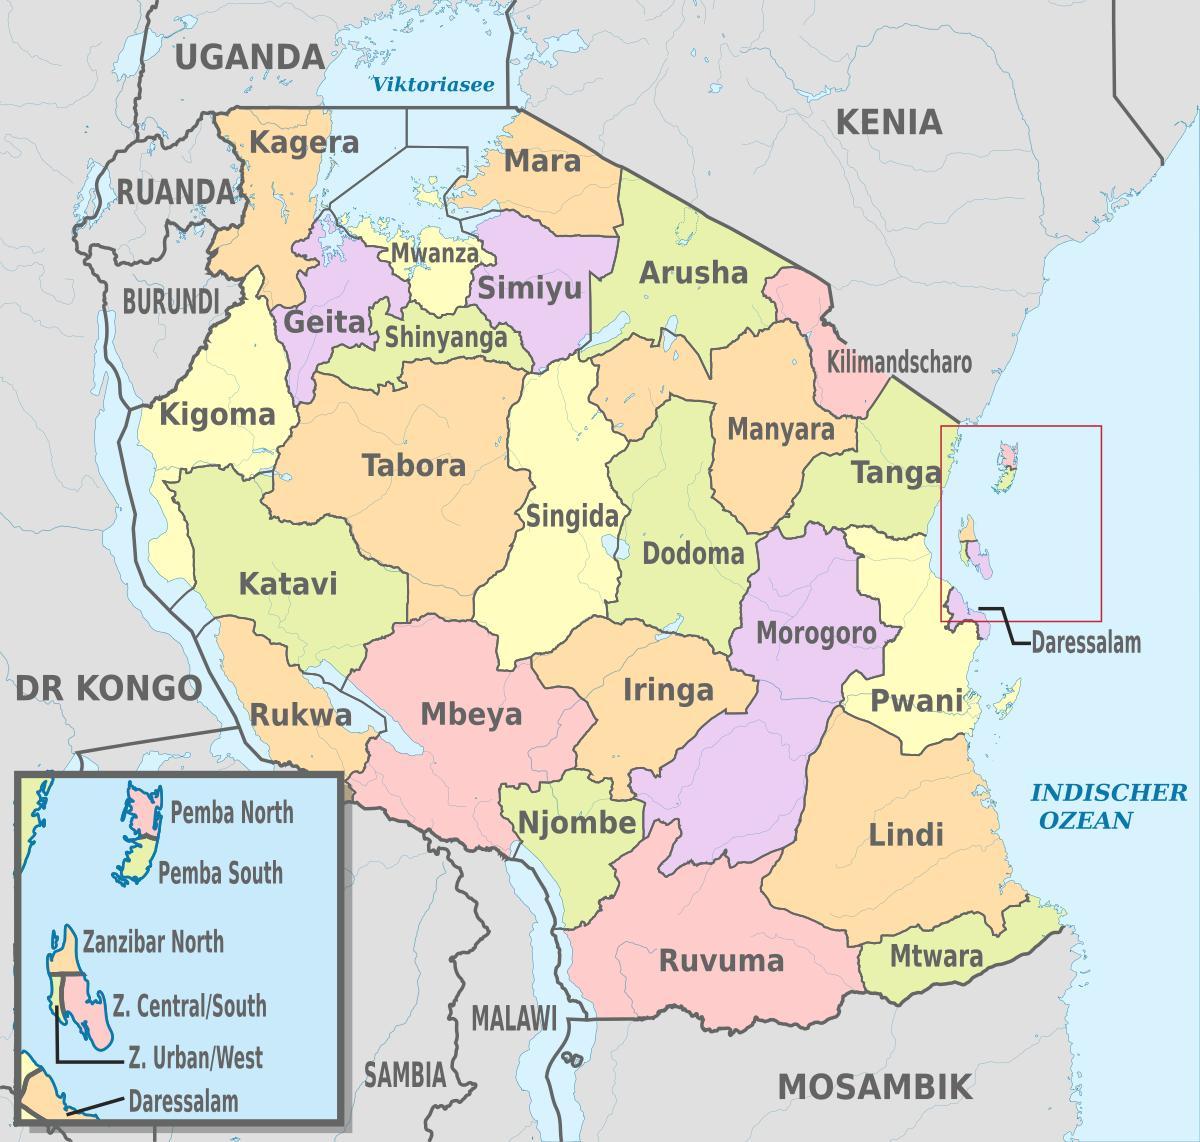 peta dari tanzania menunjukkan daerah dan kabupaten-kabupaten